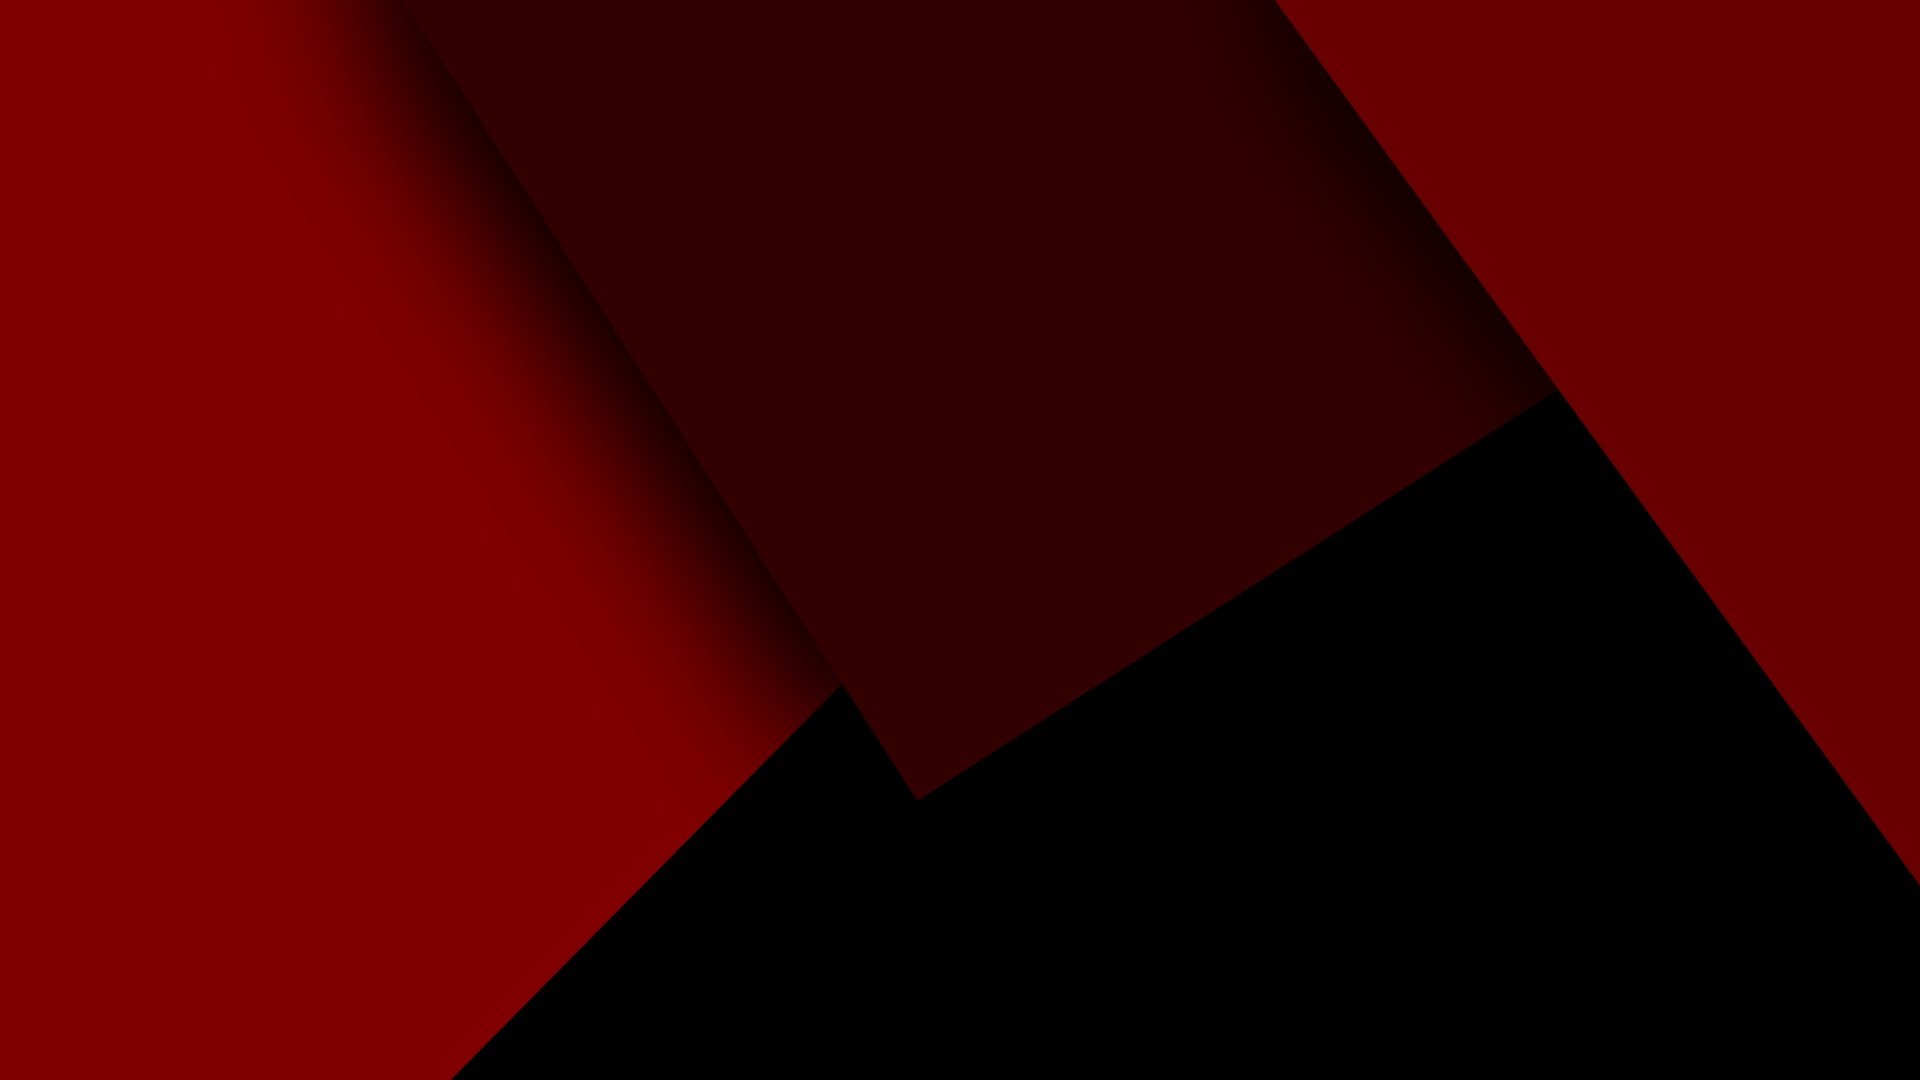 Hình nền trừu tượng màu đỏ đen hoàn hảo cho những ai yêu thích sự cổ điển và độc đáo. Khám phá nét đặc biệt và uyển chuyển của hình nền này trên màn hình của bạn. Hãy để tinh thần sáng tạo của mình được bay cao cùng hình nền này.